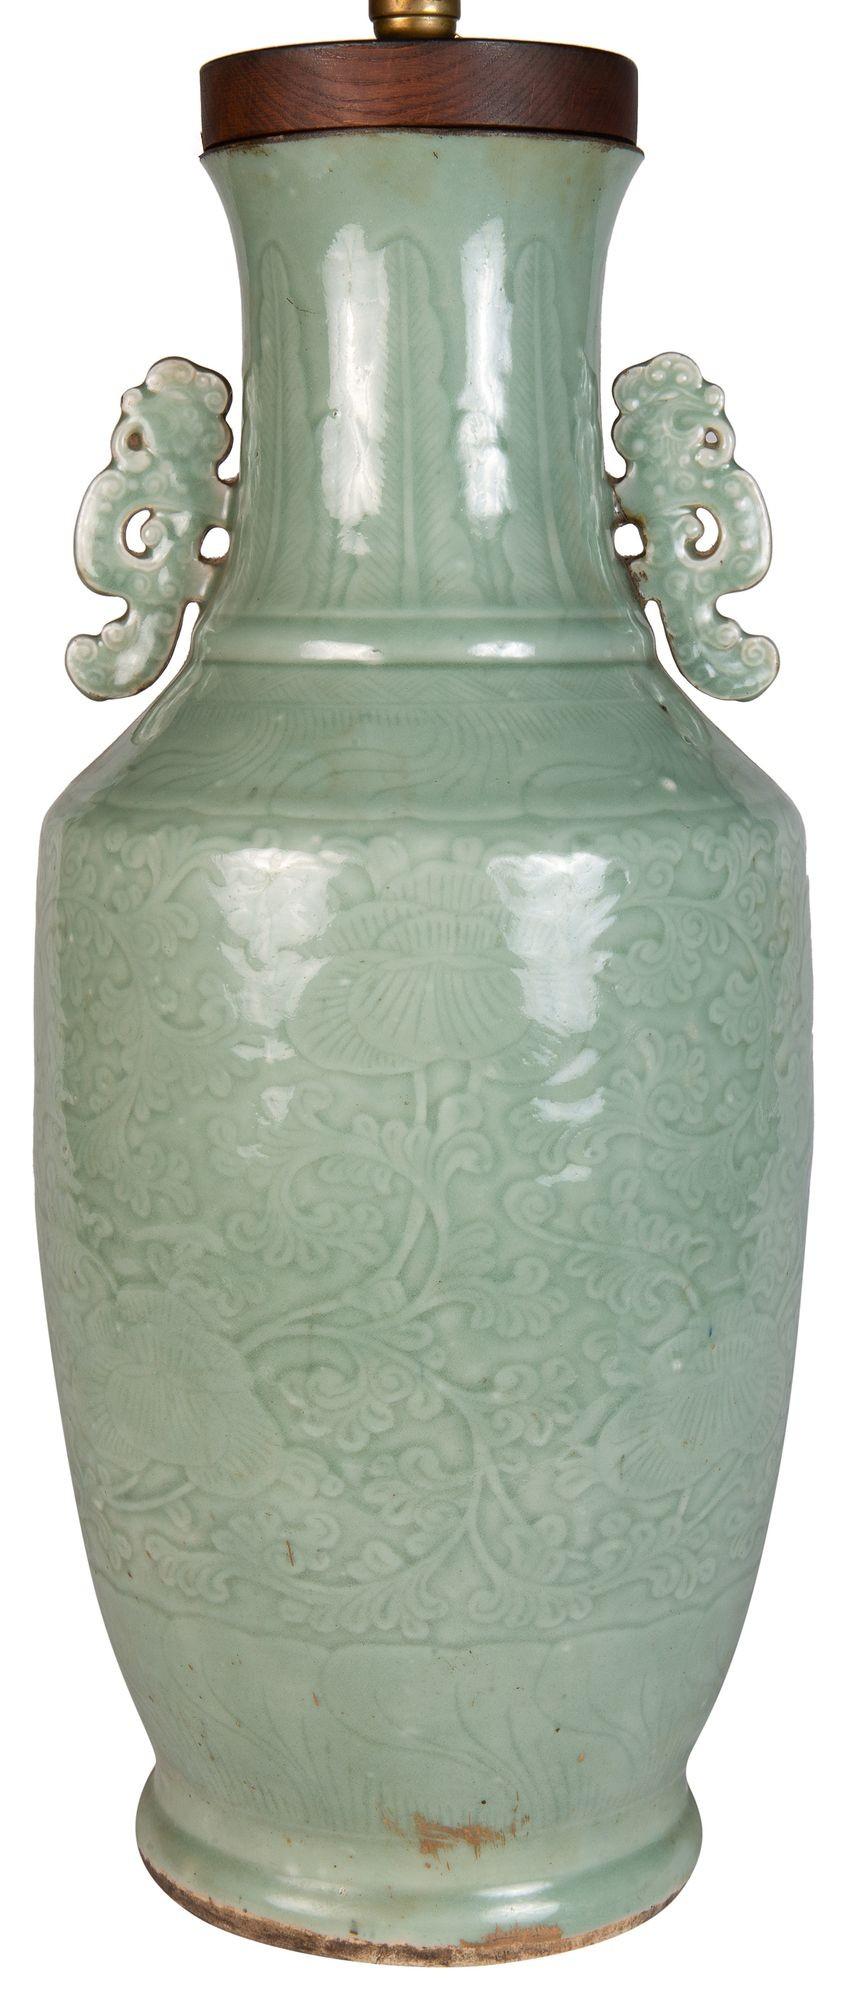 Eine sehr beeindruckende Vase/Lampe aus chinesischem Celadon-Porzellan aus dem frühen 19. Jahrhundert. Mit wundervoller, geprägter Verzierung und klassischen Griffen auf beiden Seiten.
Wir können die Vase in einen gedrechselten, vergoldeten